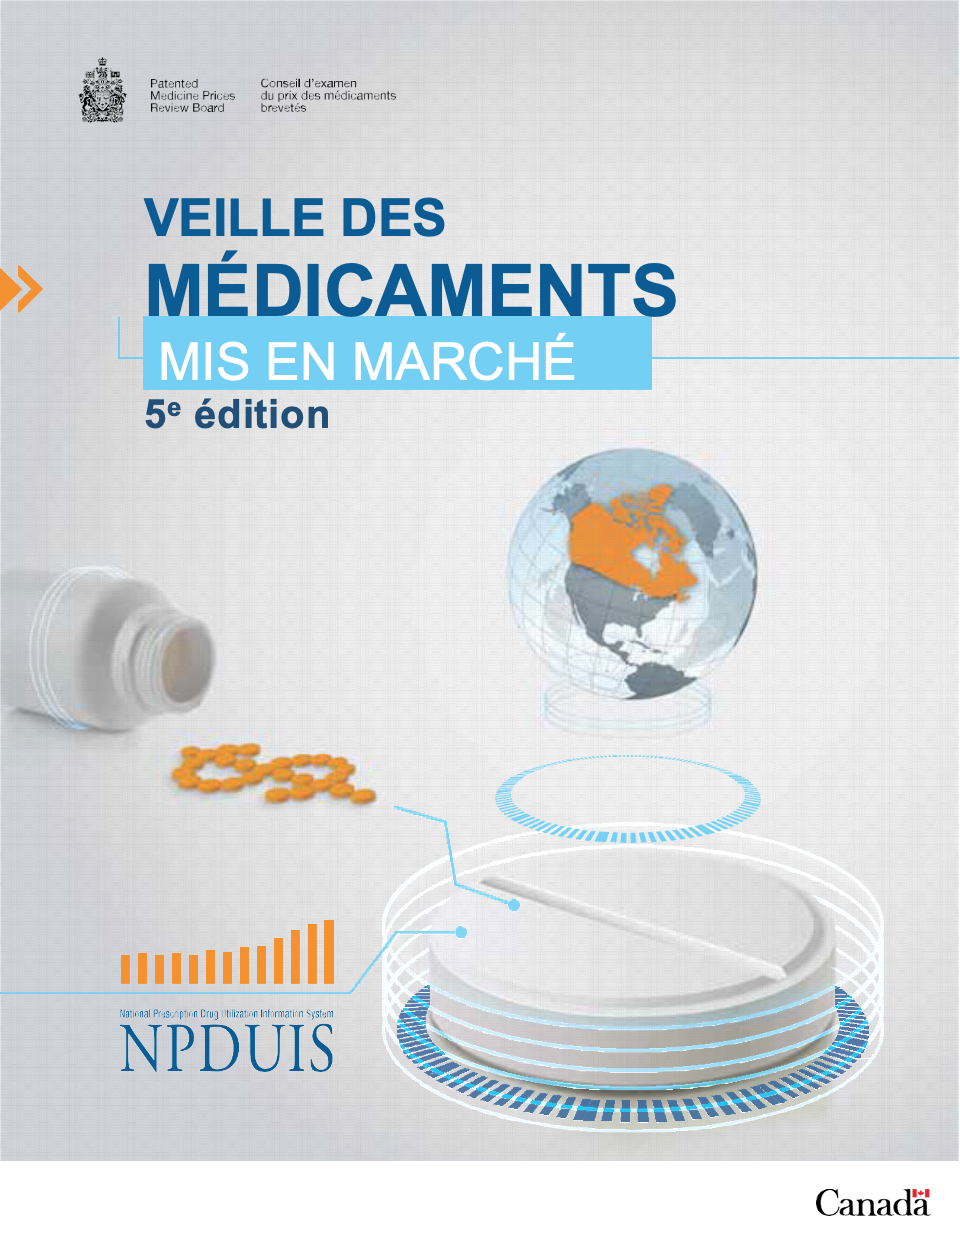 Veille des médicaments mis en marché, 5e édition - Rapport complet